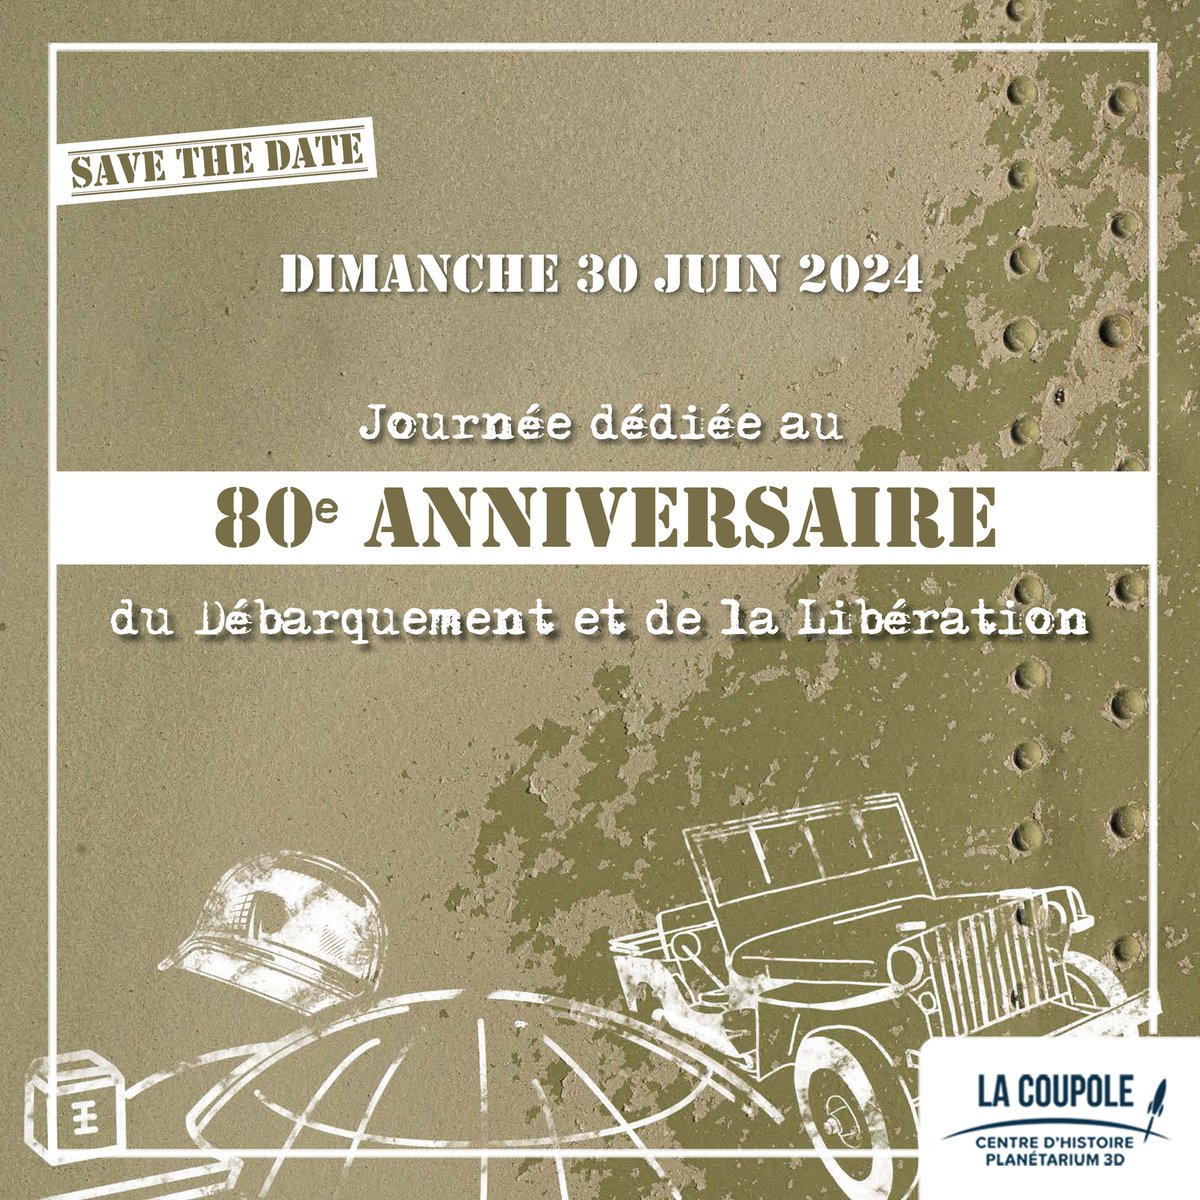 Le 30 juin 2024, RDV à @lacoupole62, l'un des plus monumentaux témoins de la Seconde Guerre mondiale, pour commémorer les 80ème anniversaire du Débarquement et de la Libération. Programme définitif très prochainement !